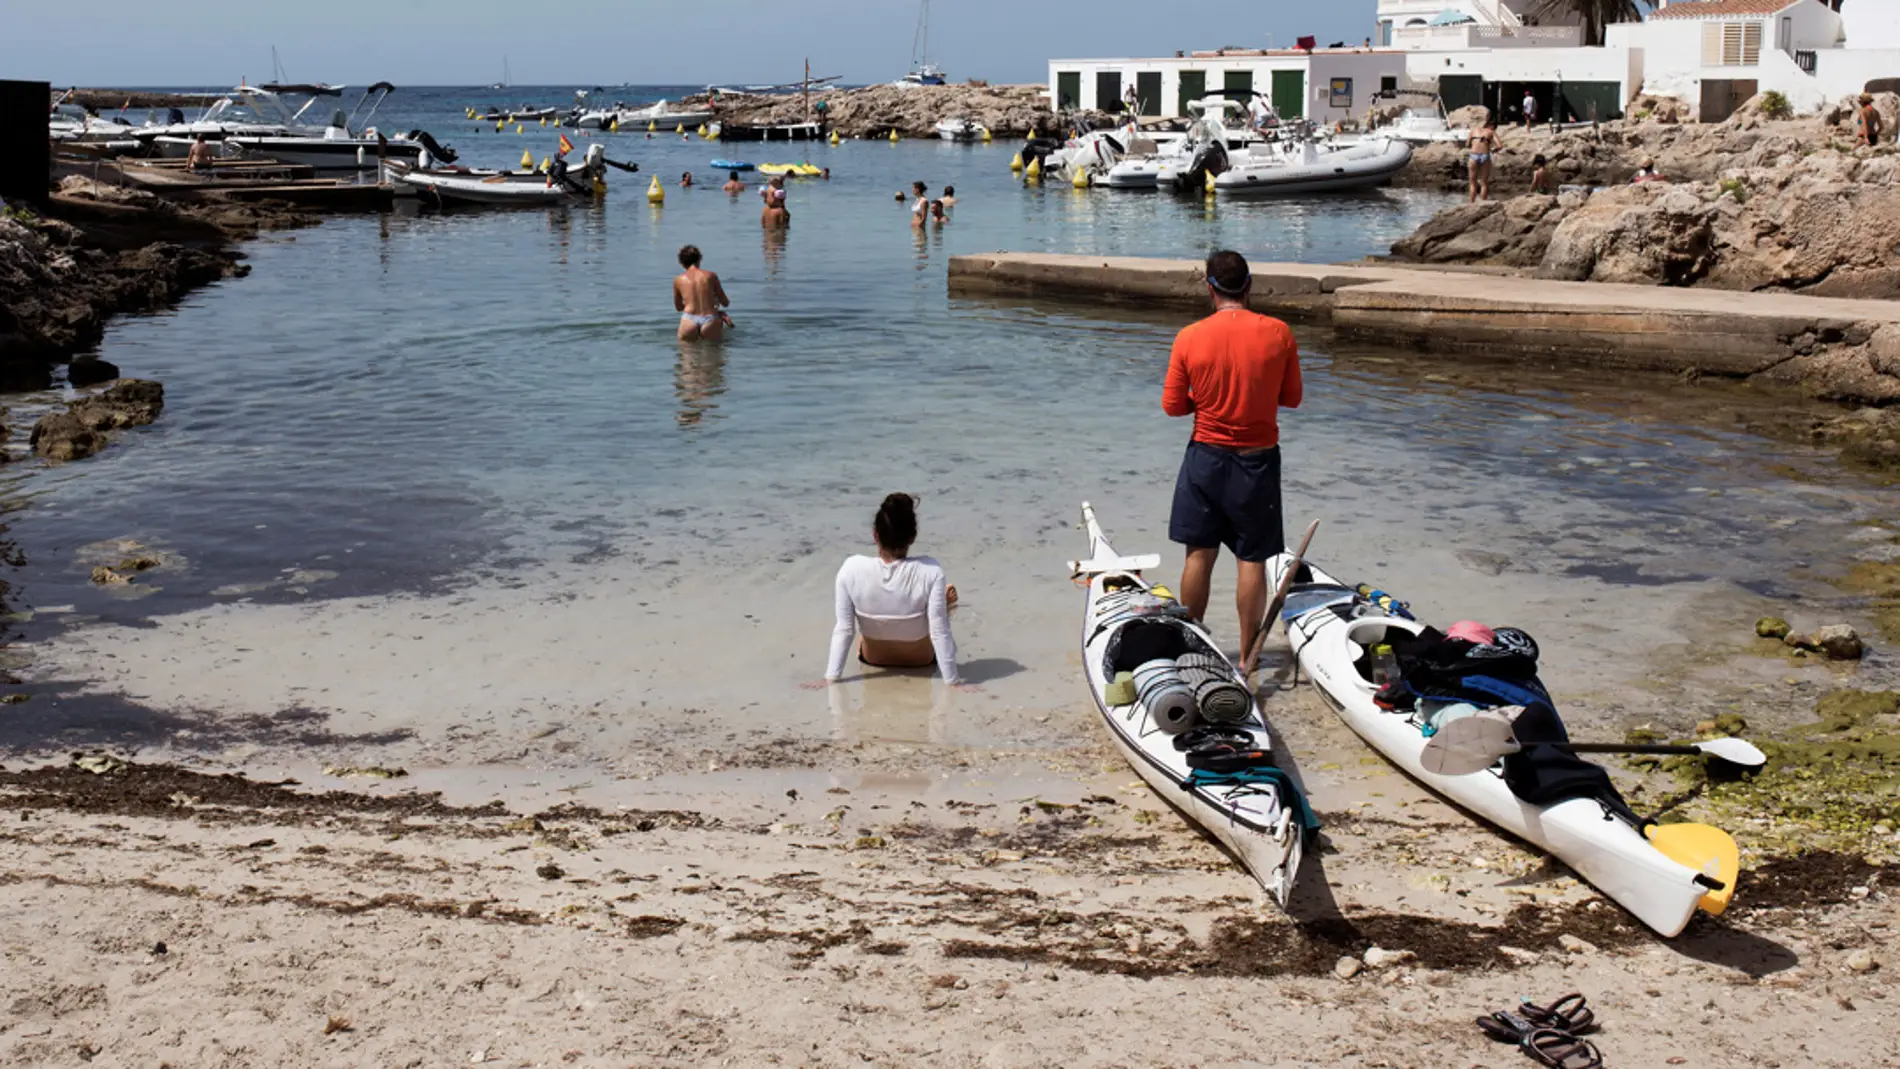 En la imagen de archivo, bañistas y pescadores buscan lugares para refrescarse entre las rocas y pequeñas calas del litoral de Sant Lluís, Menorca/ EFE/David Arquimbau Sintes